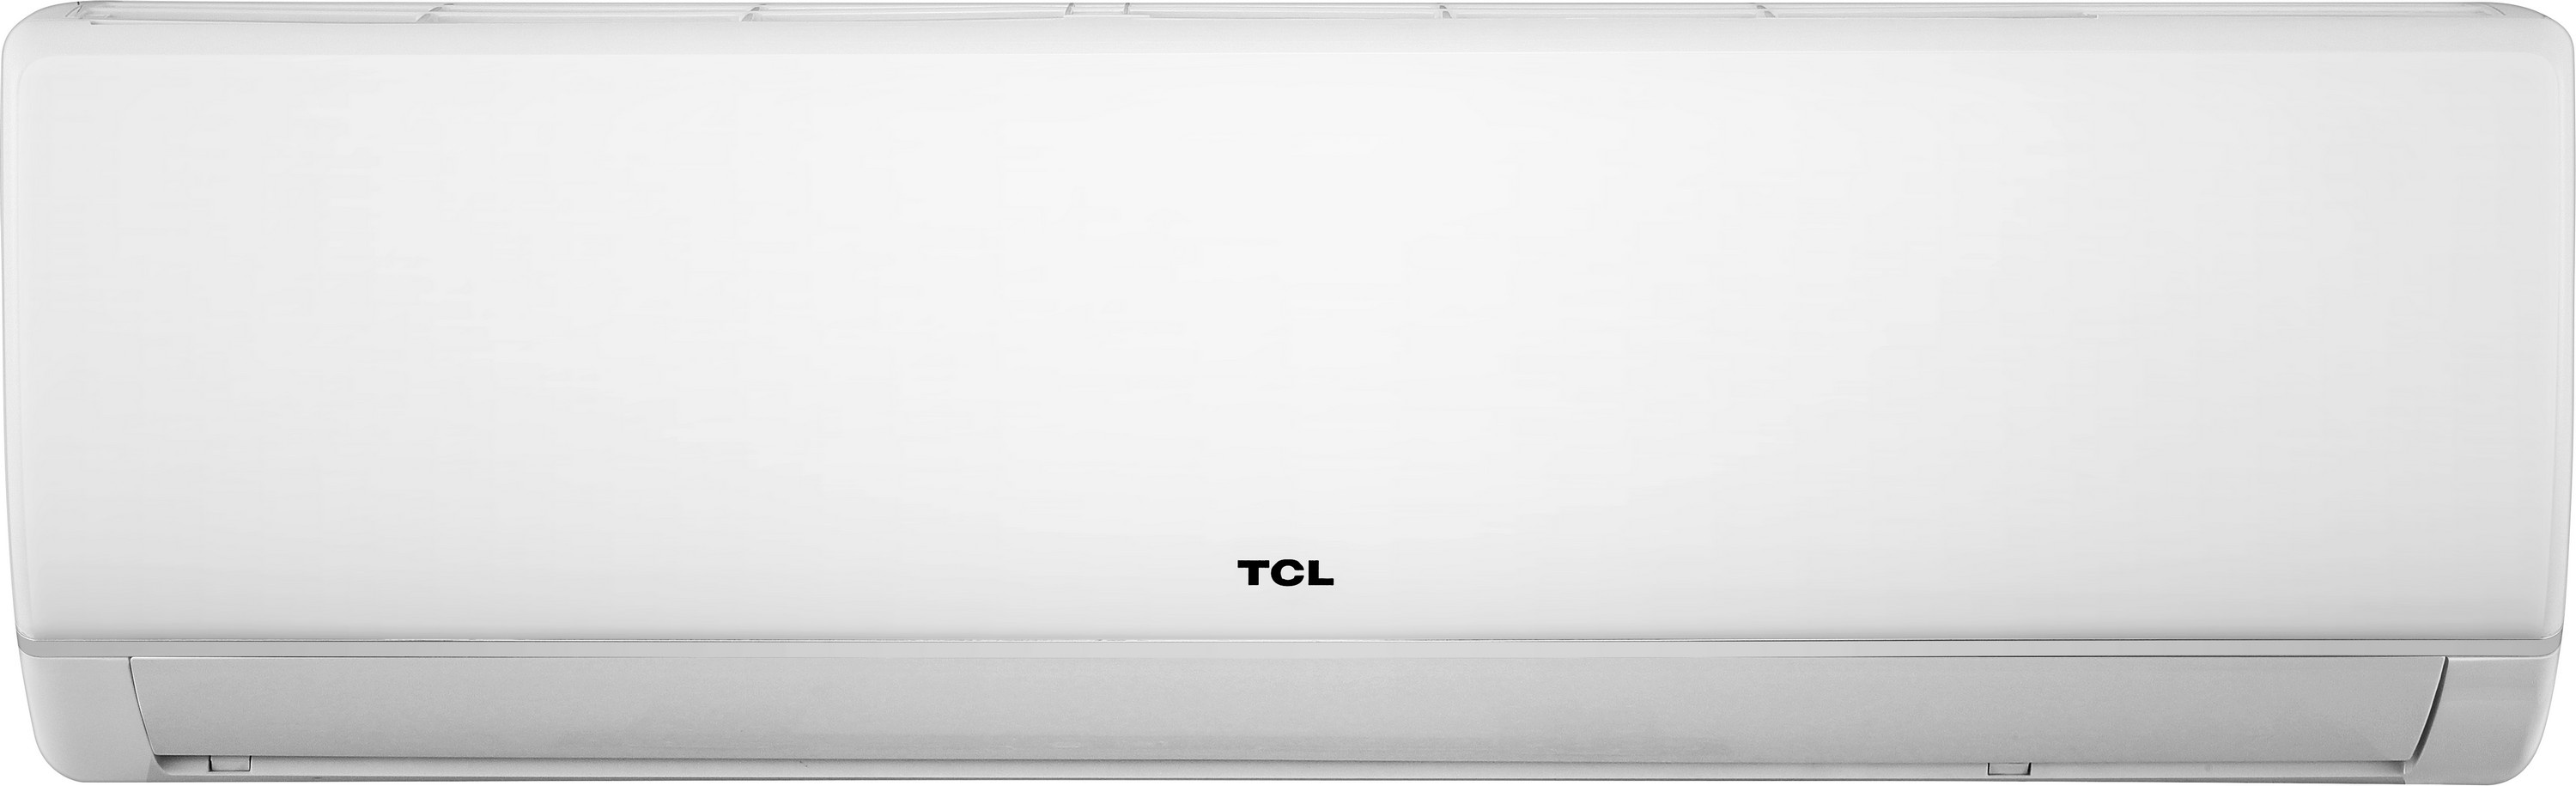 Кондиционер сплит-система TCL Miracle TAC-09CHSA/VB цена 0 грн - фотография 2